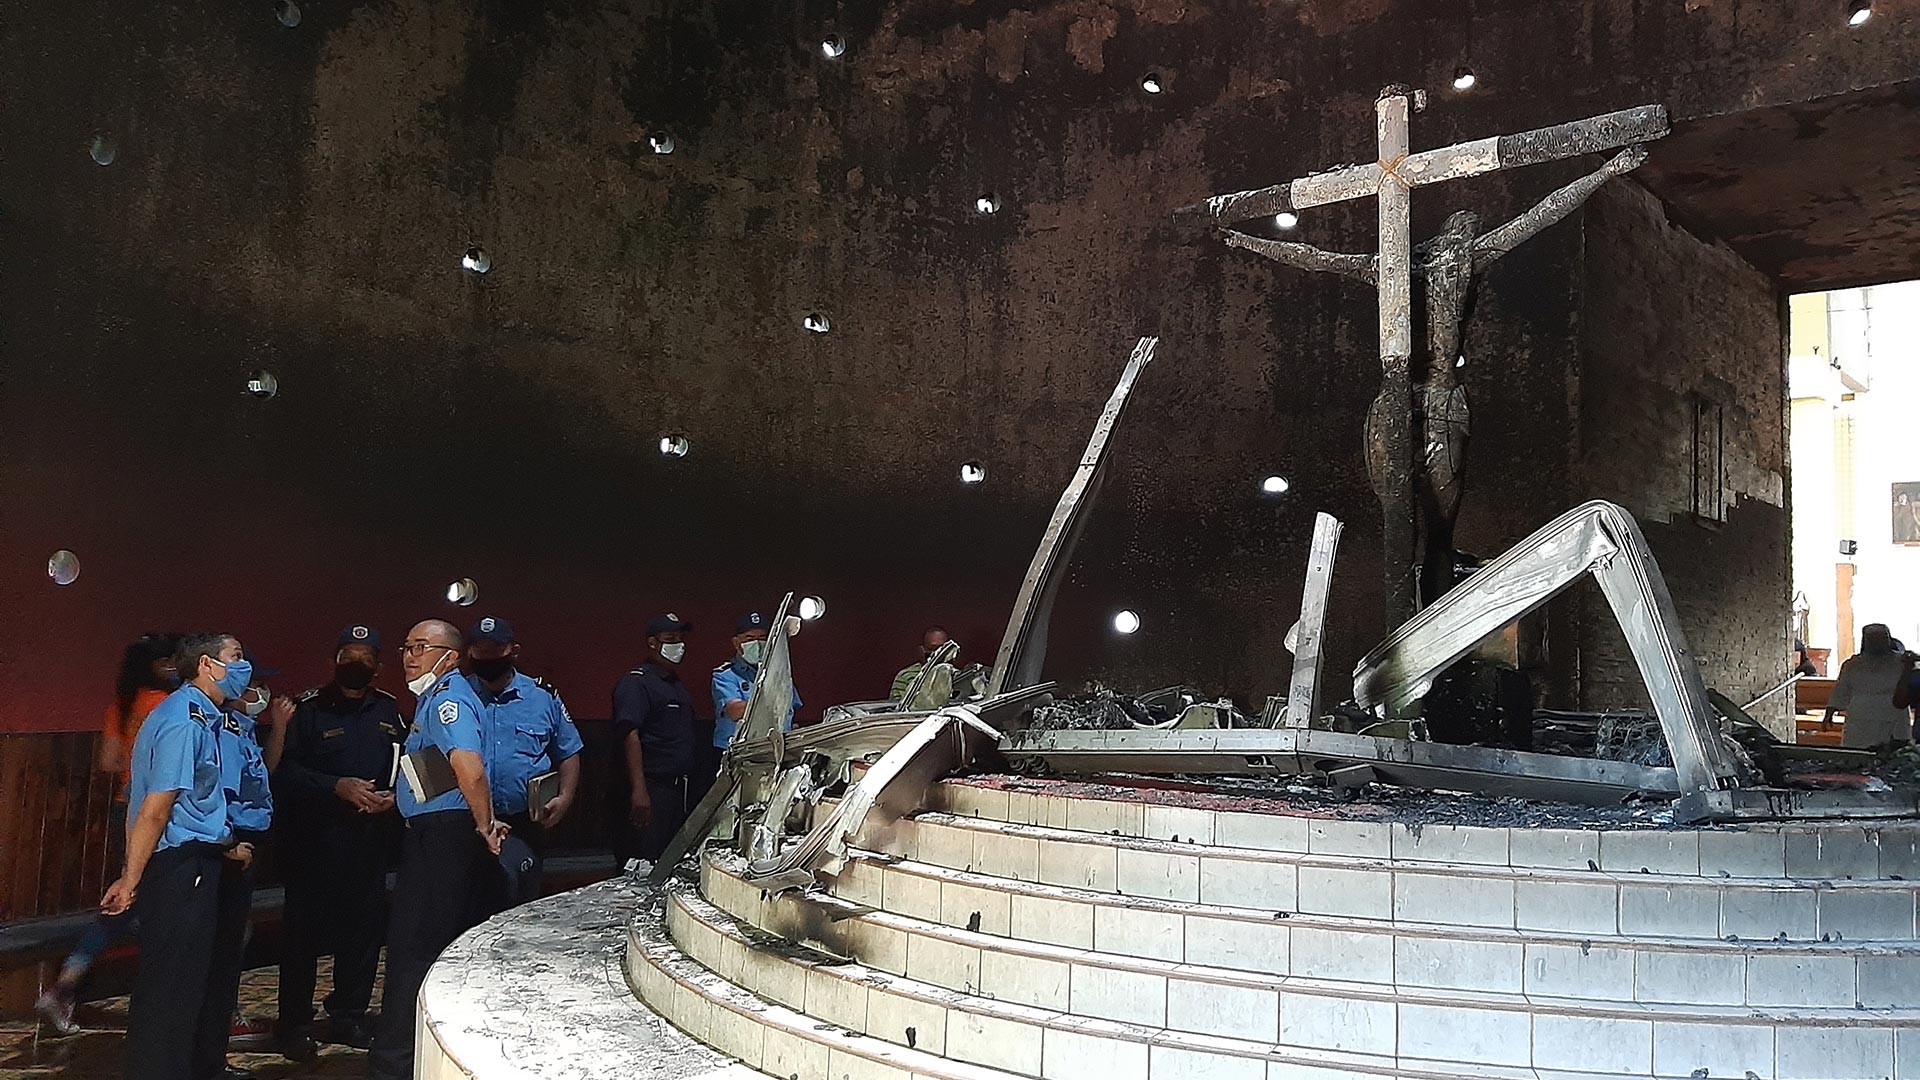 Em julho de 2020, a imagem do Sangue de Cristo na Catedral Metropolitana de Manágua sofreu um ataque que incendiou seu santuário. (Foto cortesia da Imprensa)